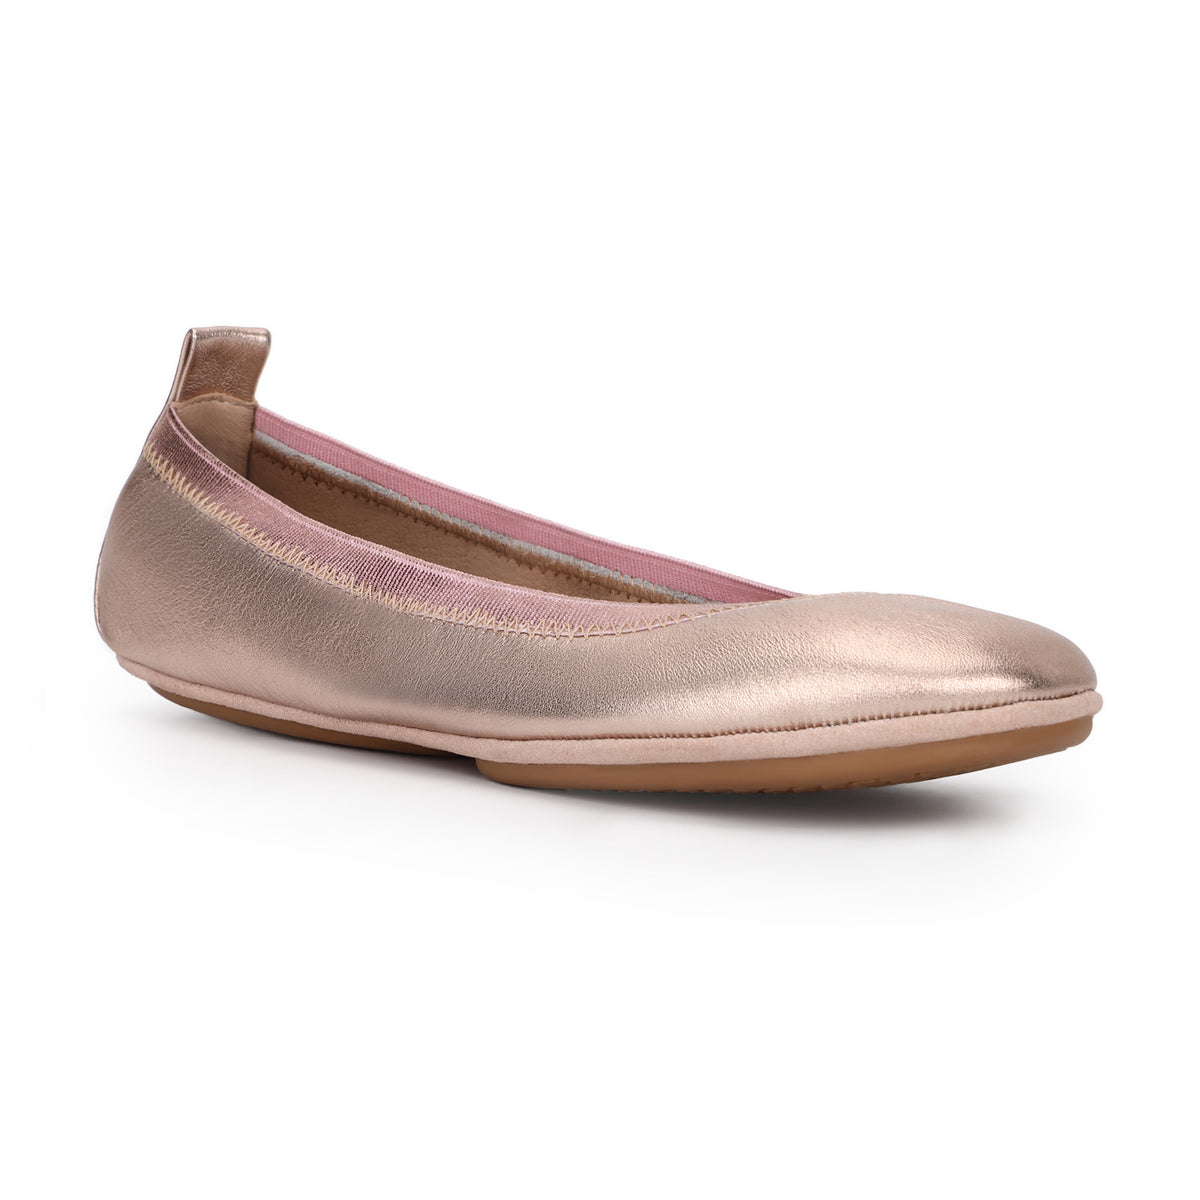 Samara Foldable Ballet Flat in Rose Gold Metallic Leather